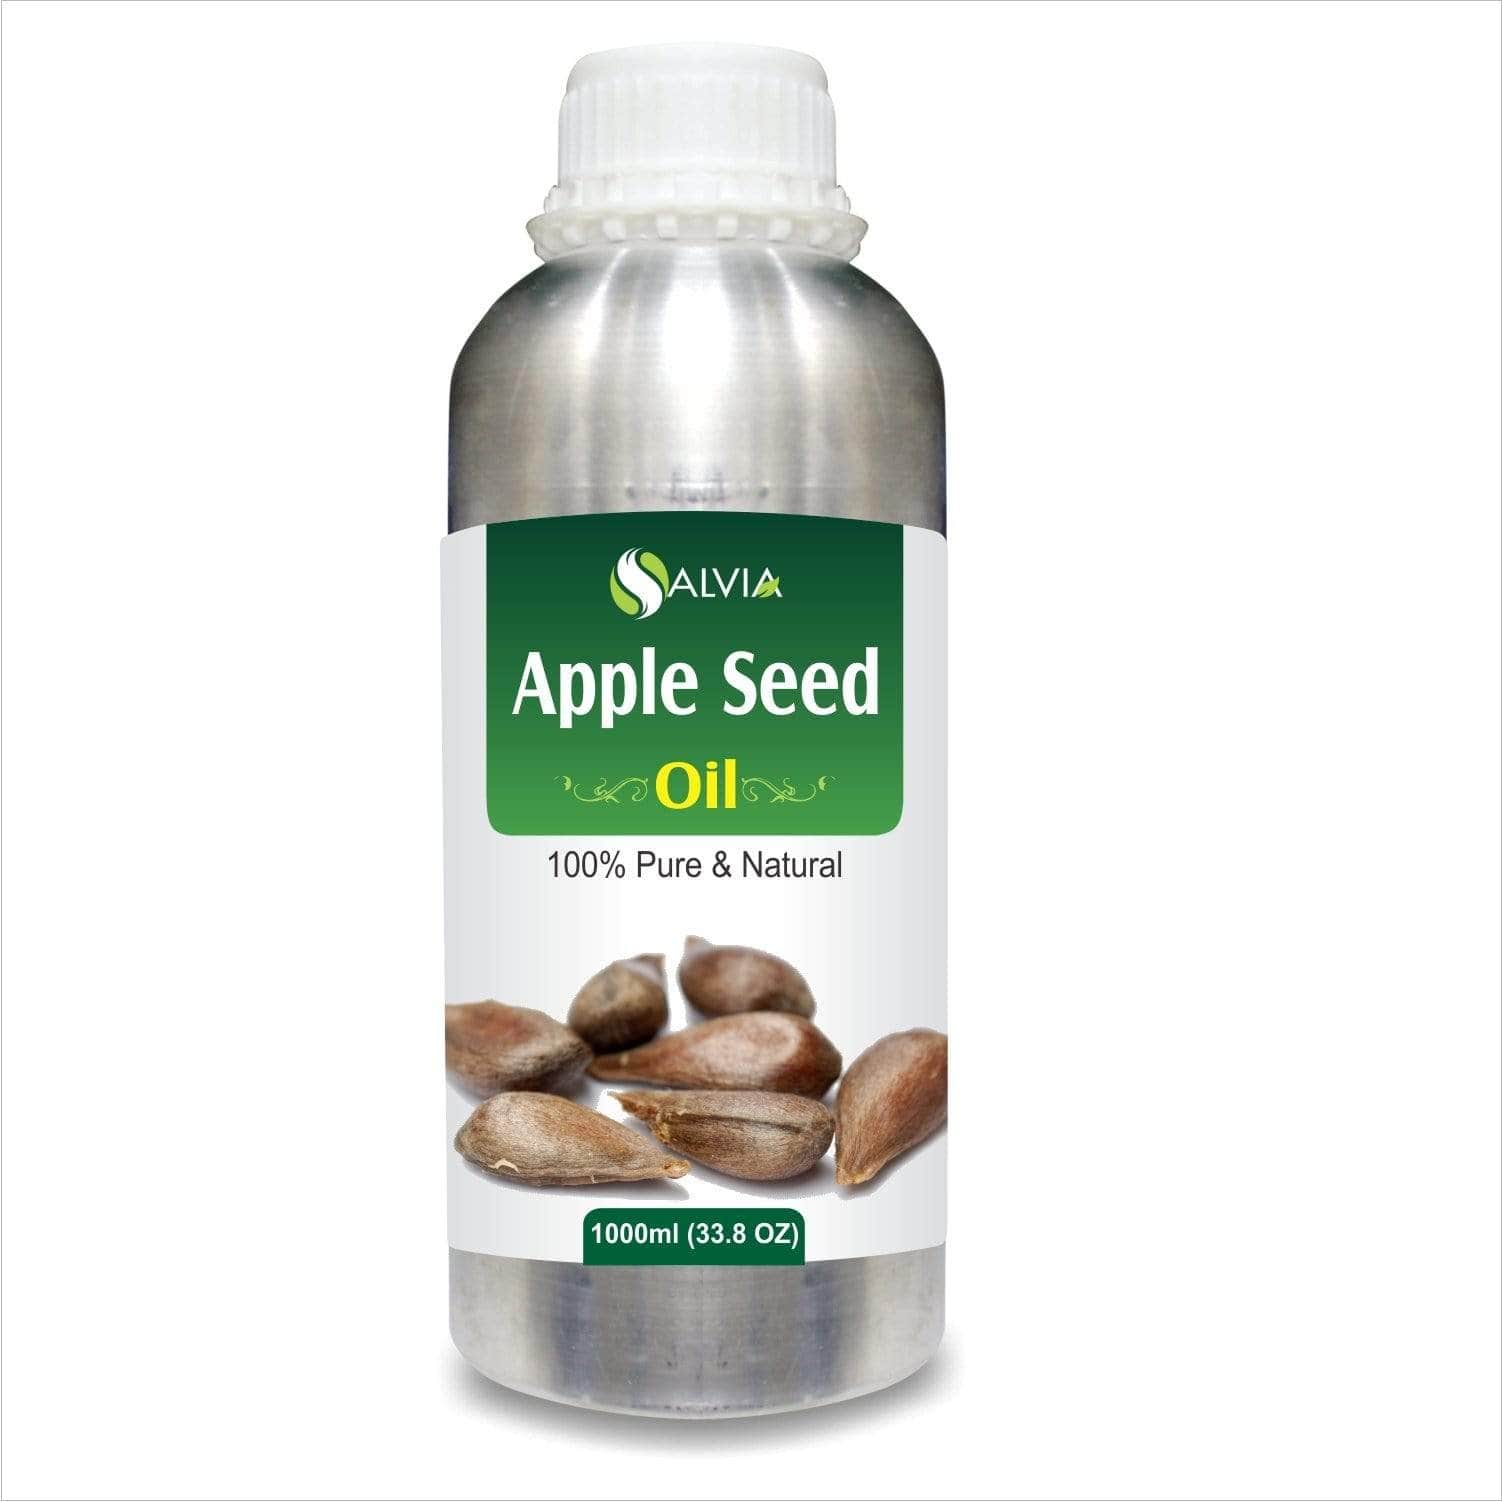 apple seed oil price